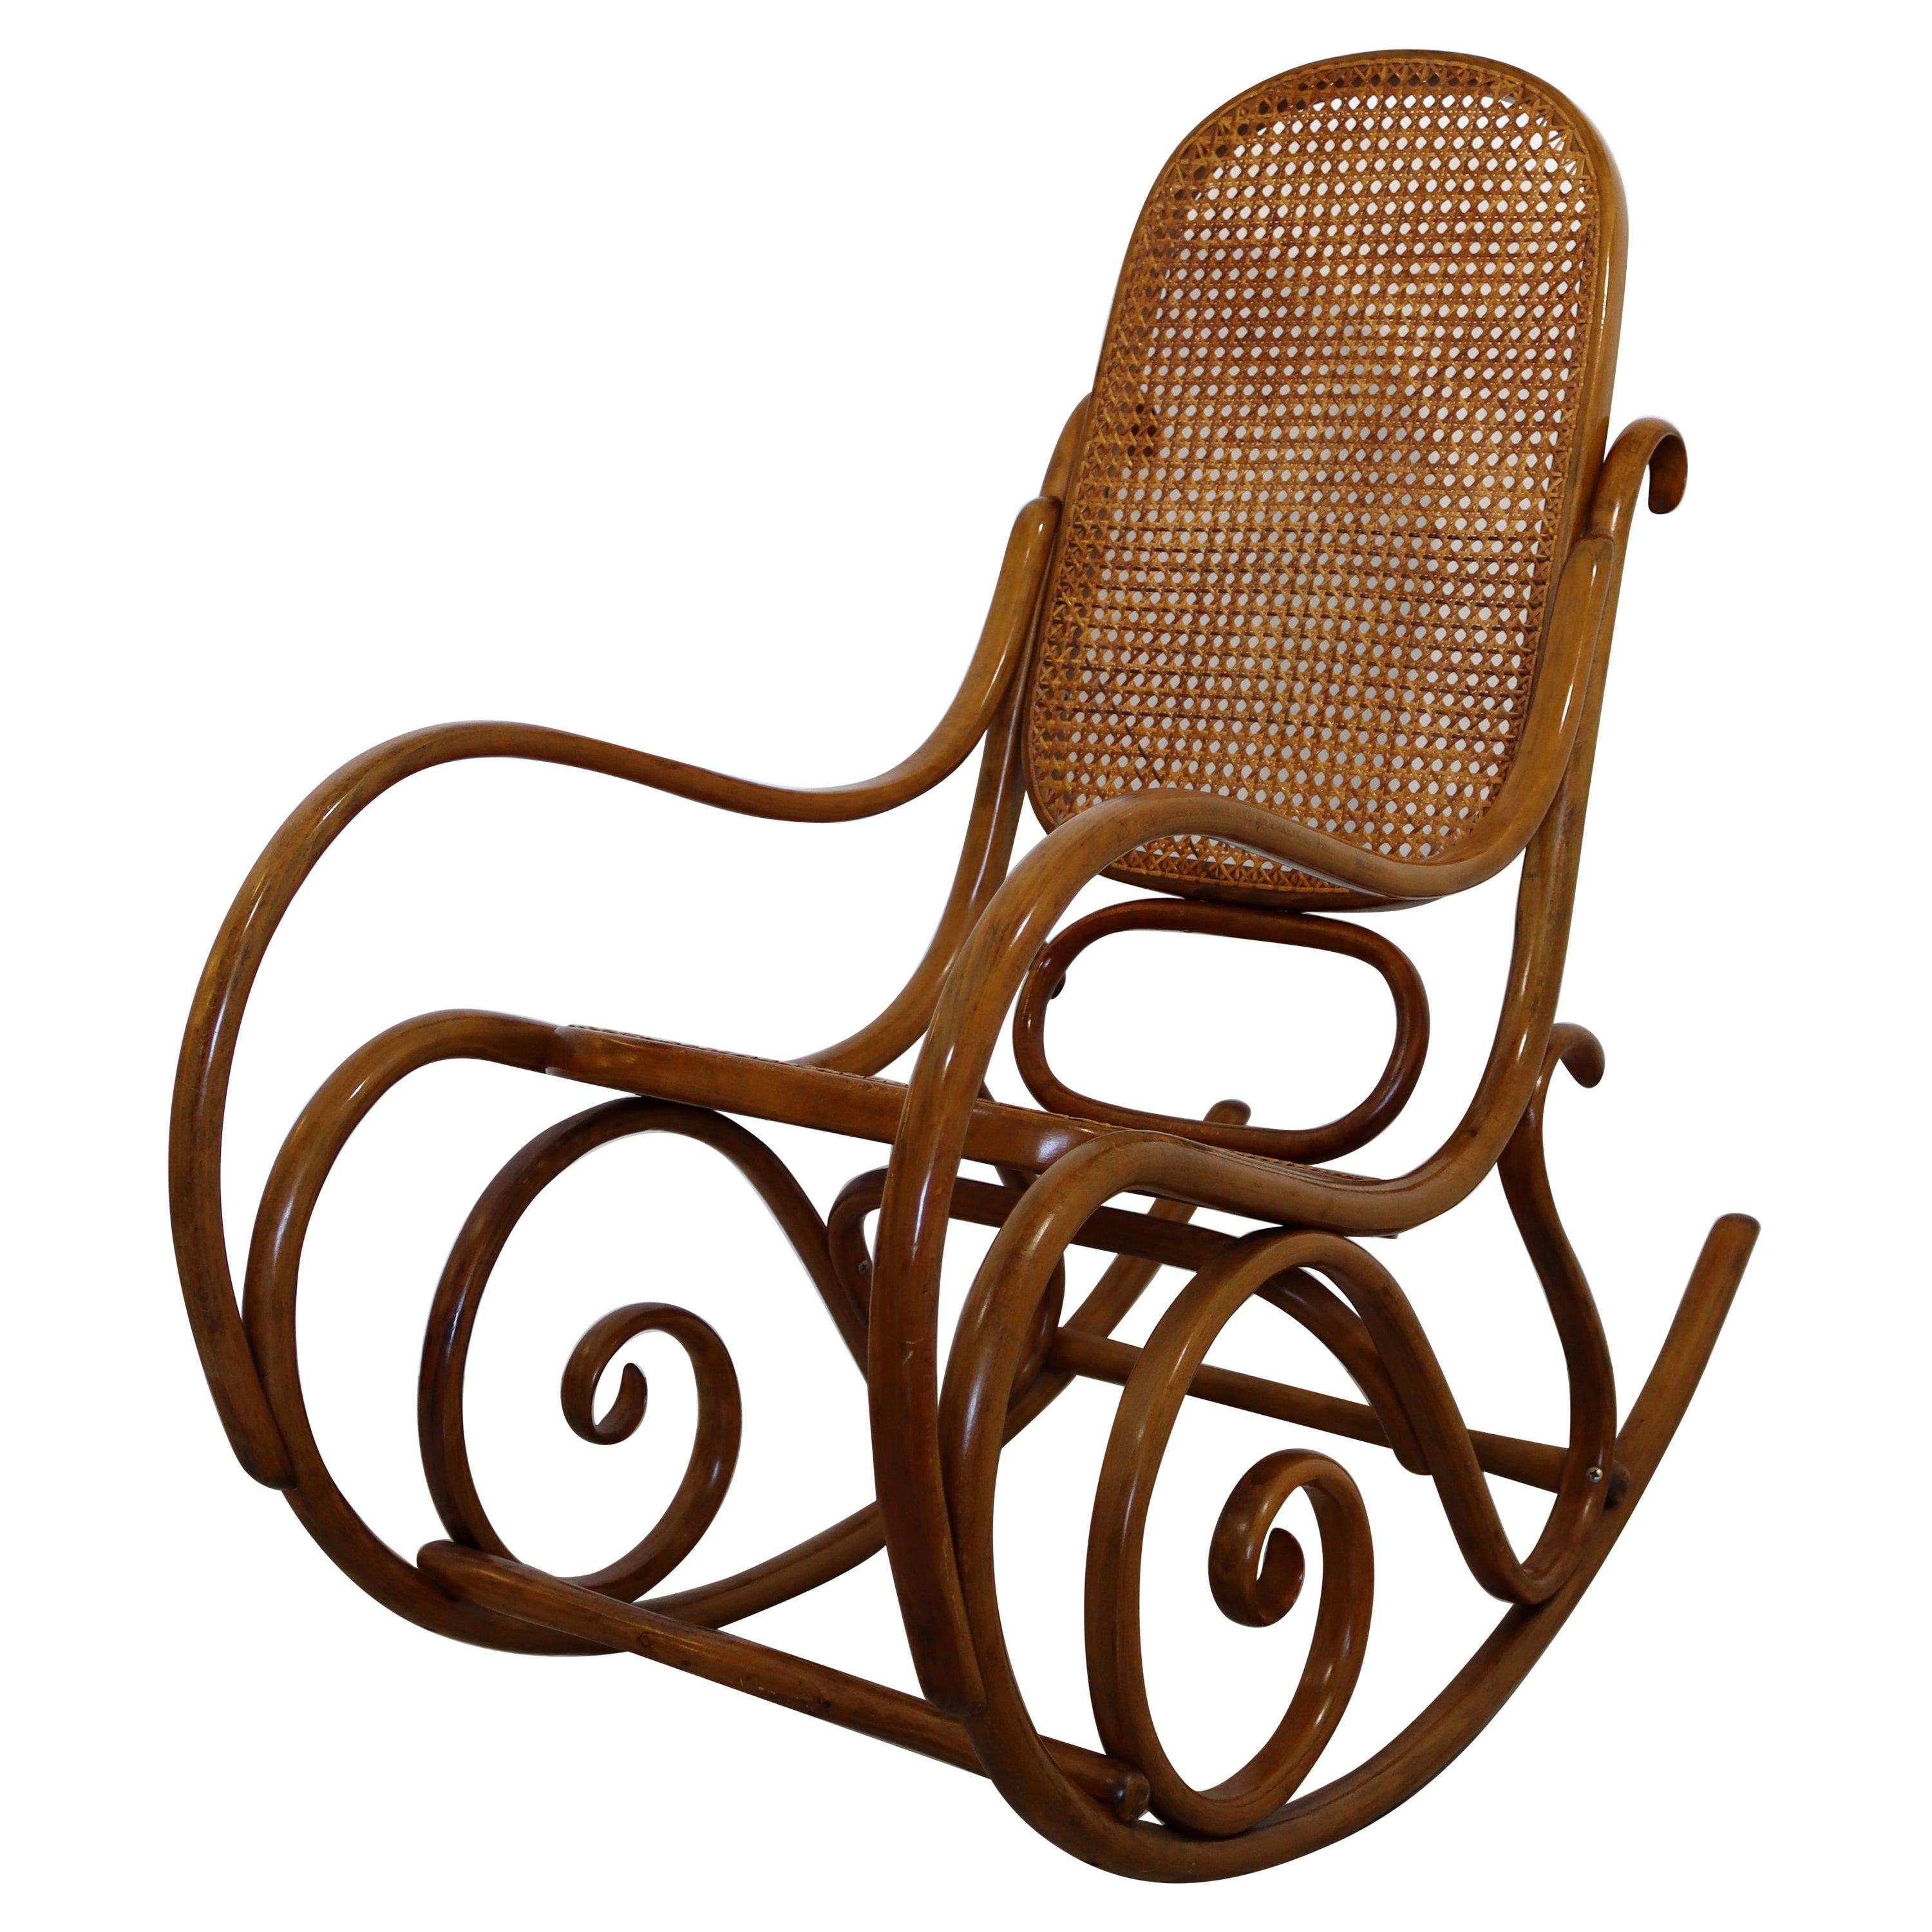 Mid-Century Modern Thonet Bentwood & Cane Schaukelstuhl Rocker Rocking Chair 70s